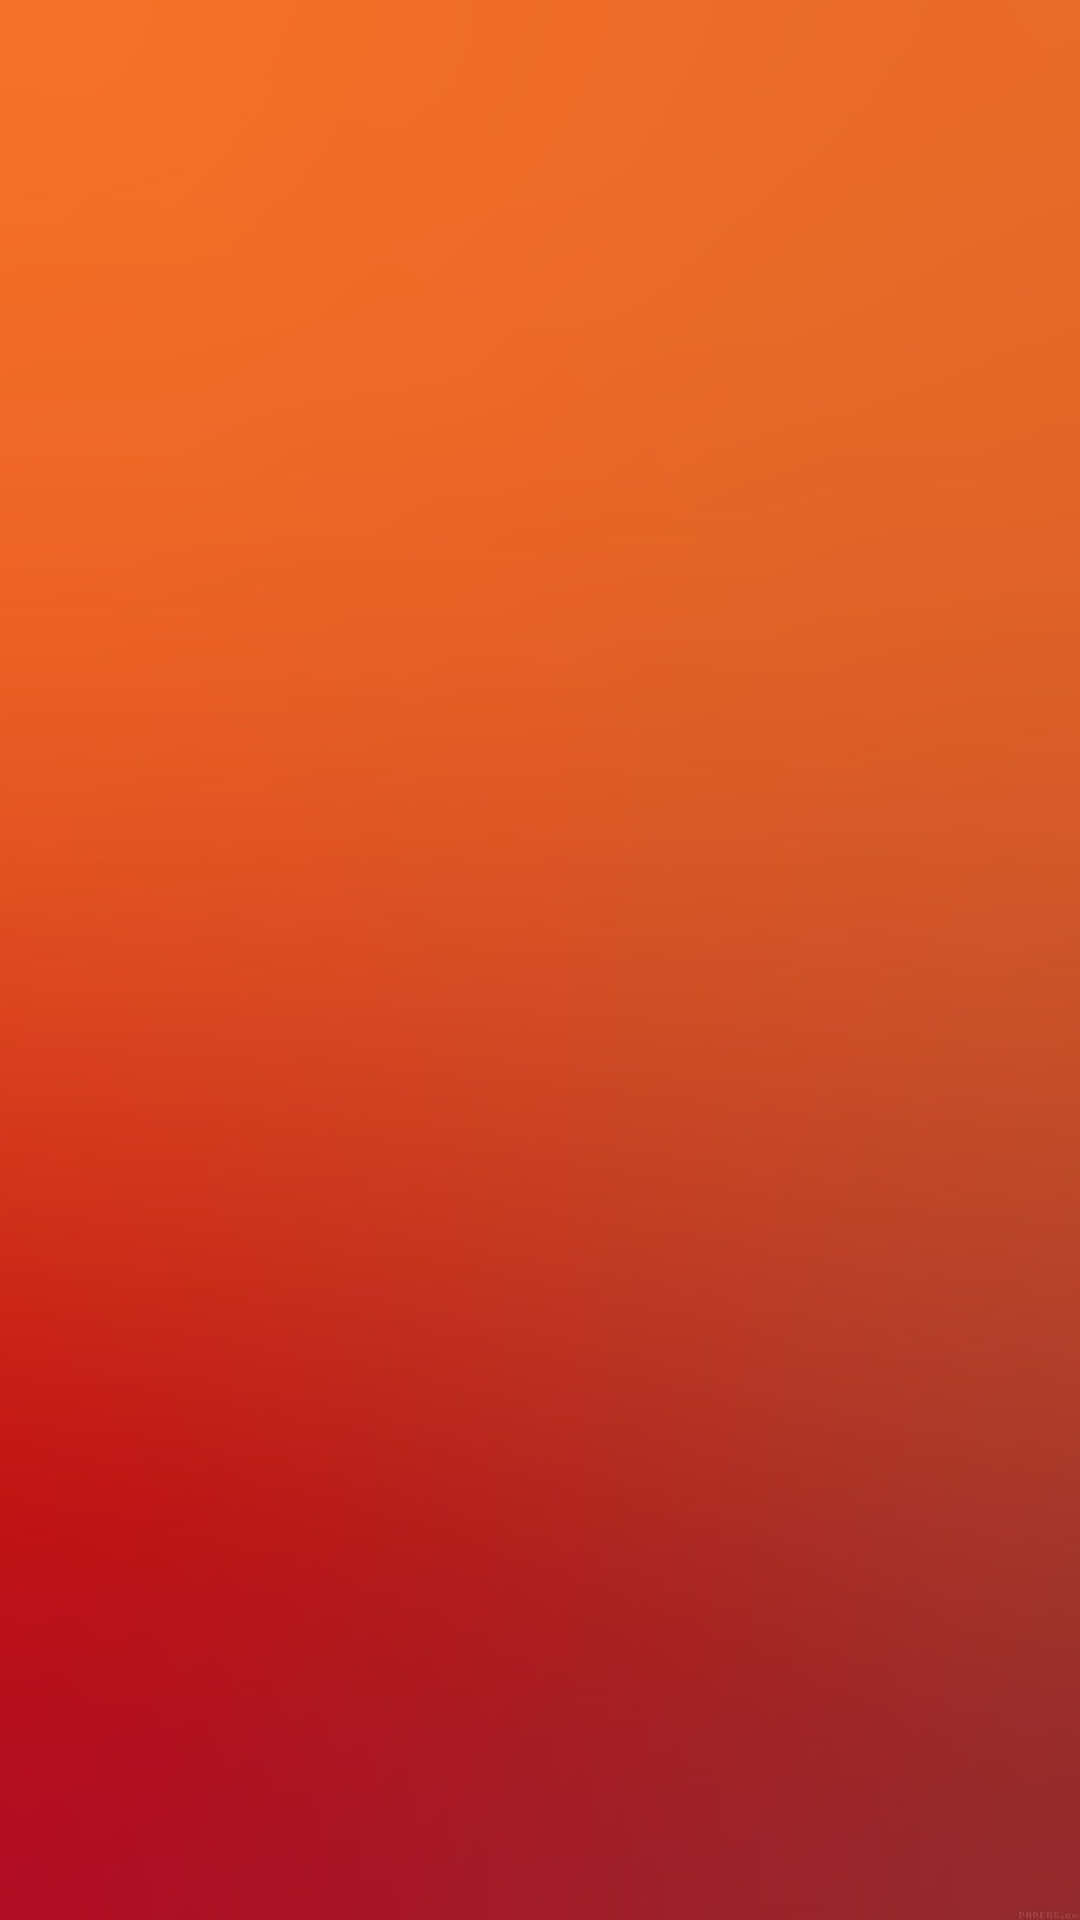 A minimalist dark orange background